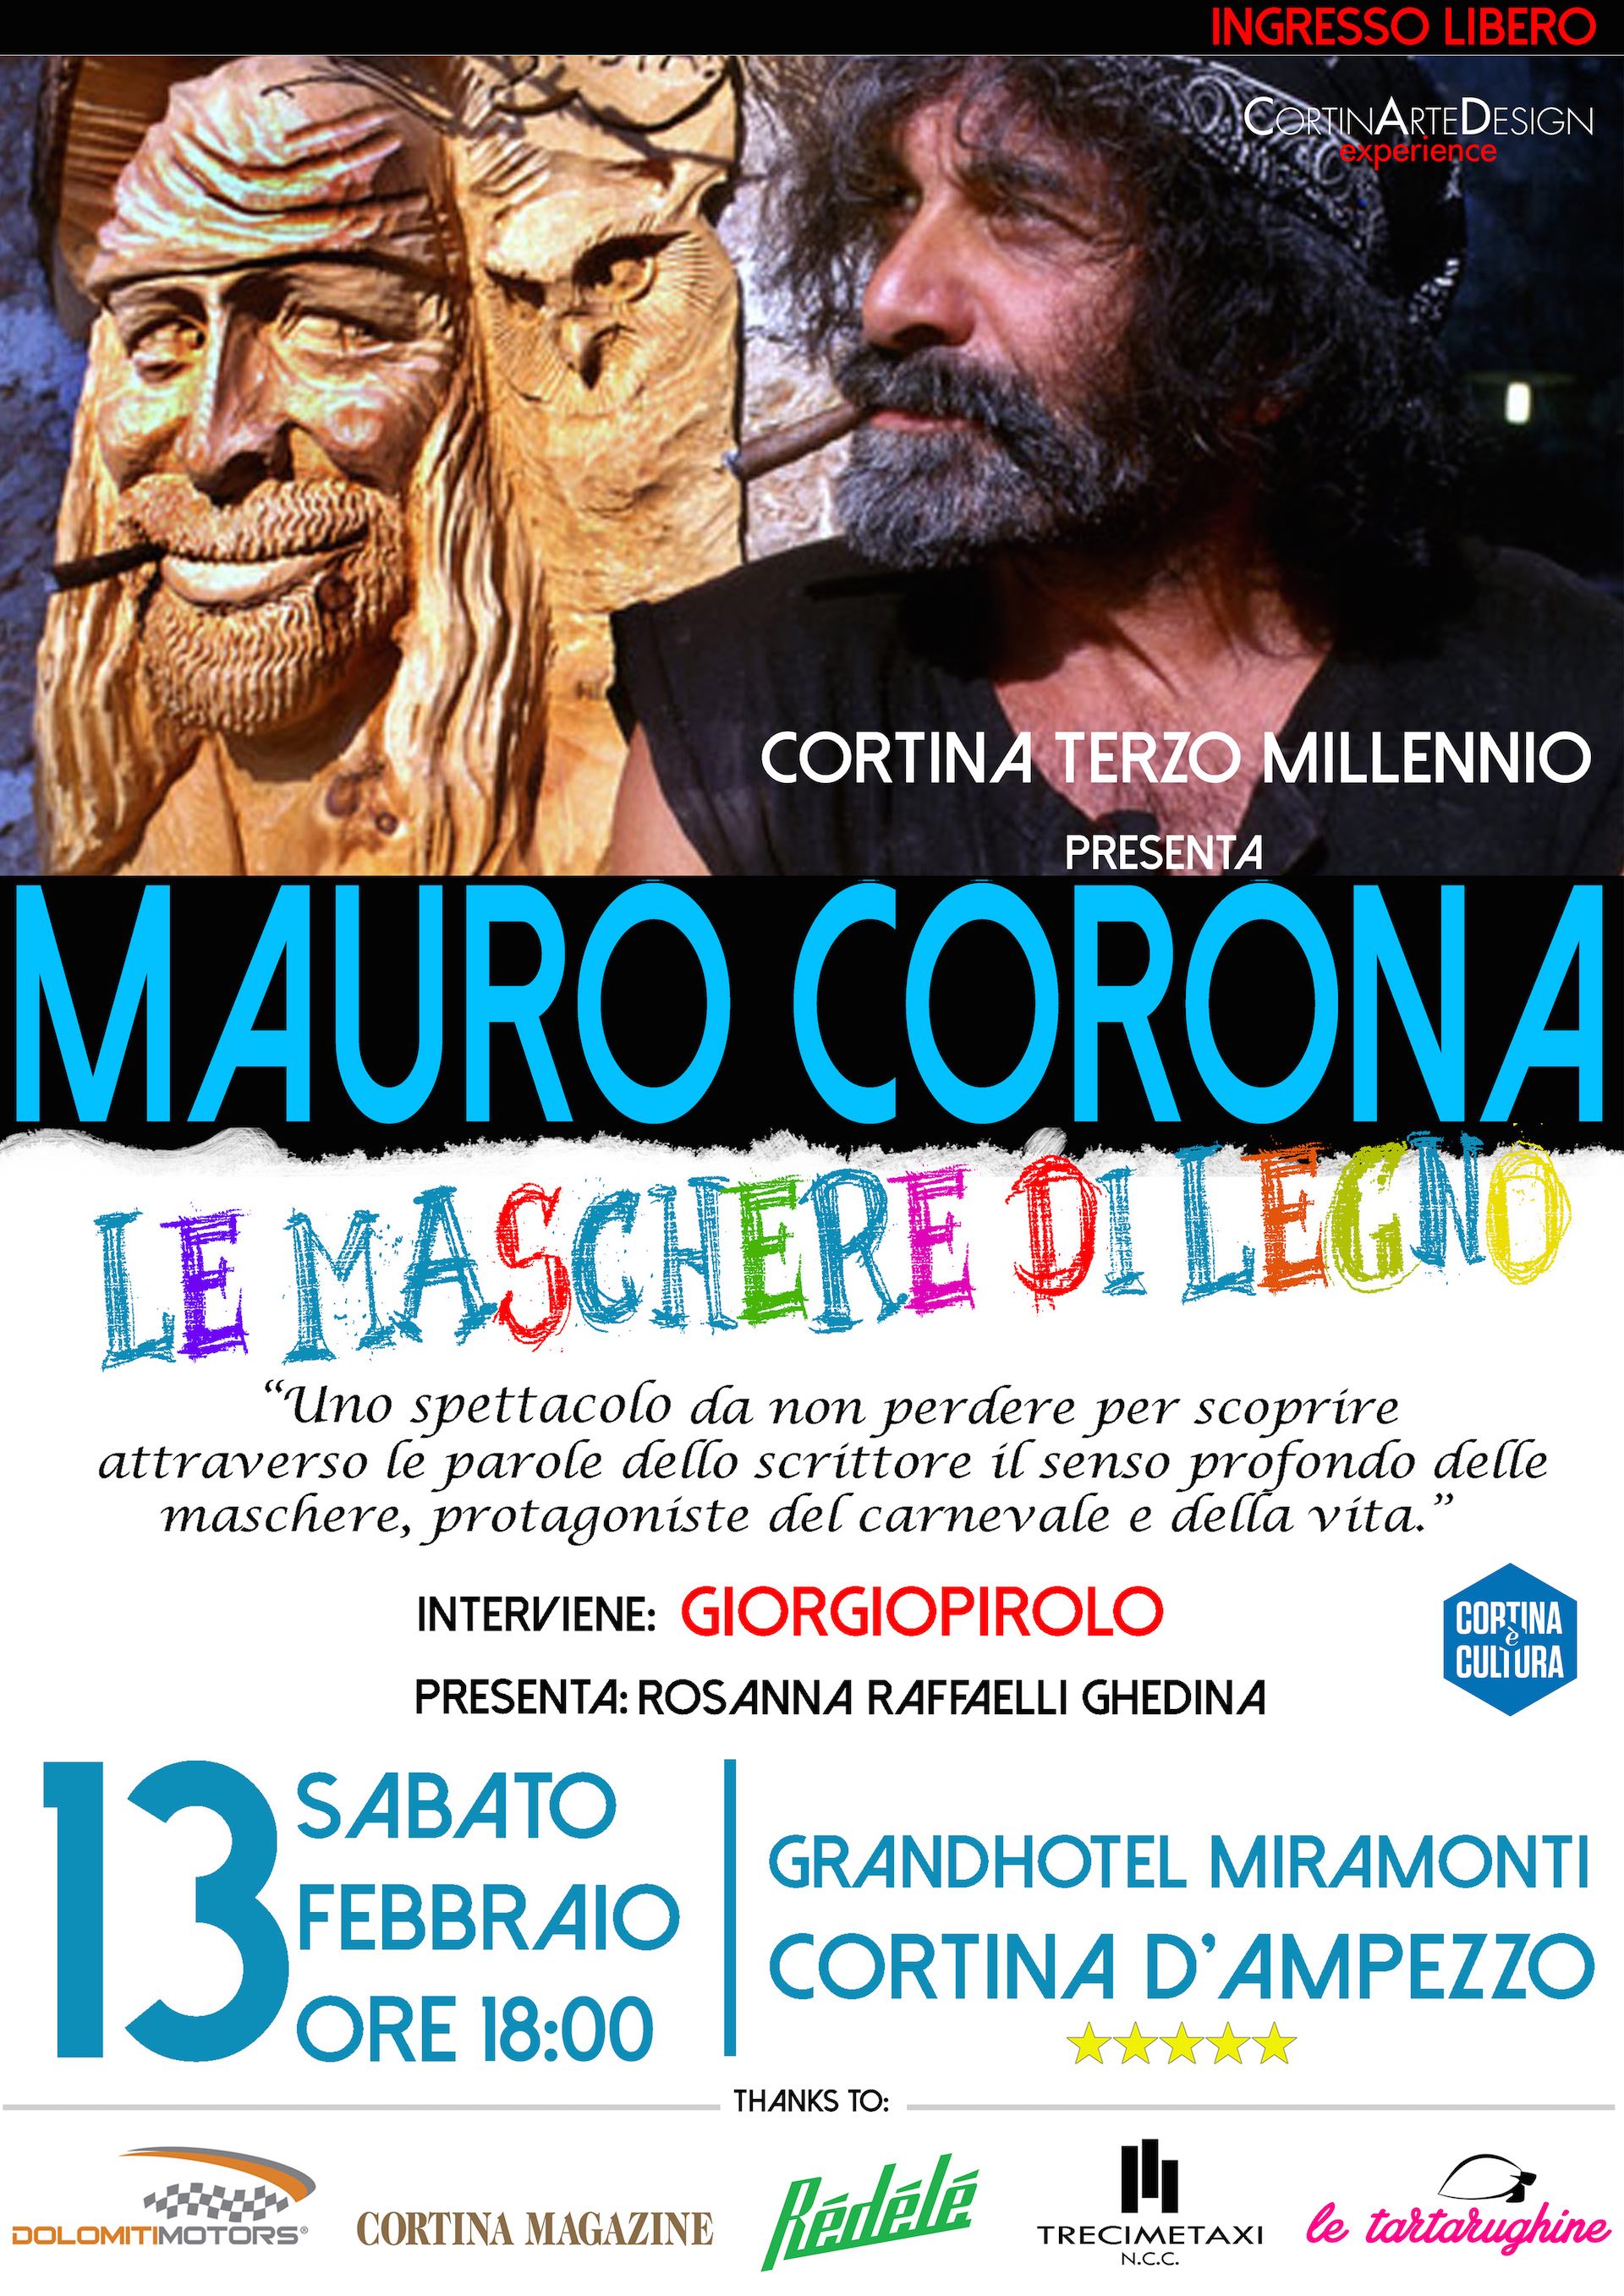 Mauro-corona-giorgio-pirolo-cortina-13-febbraio